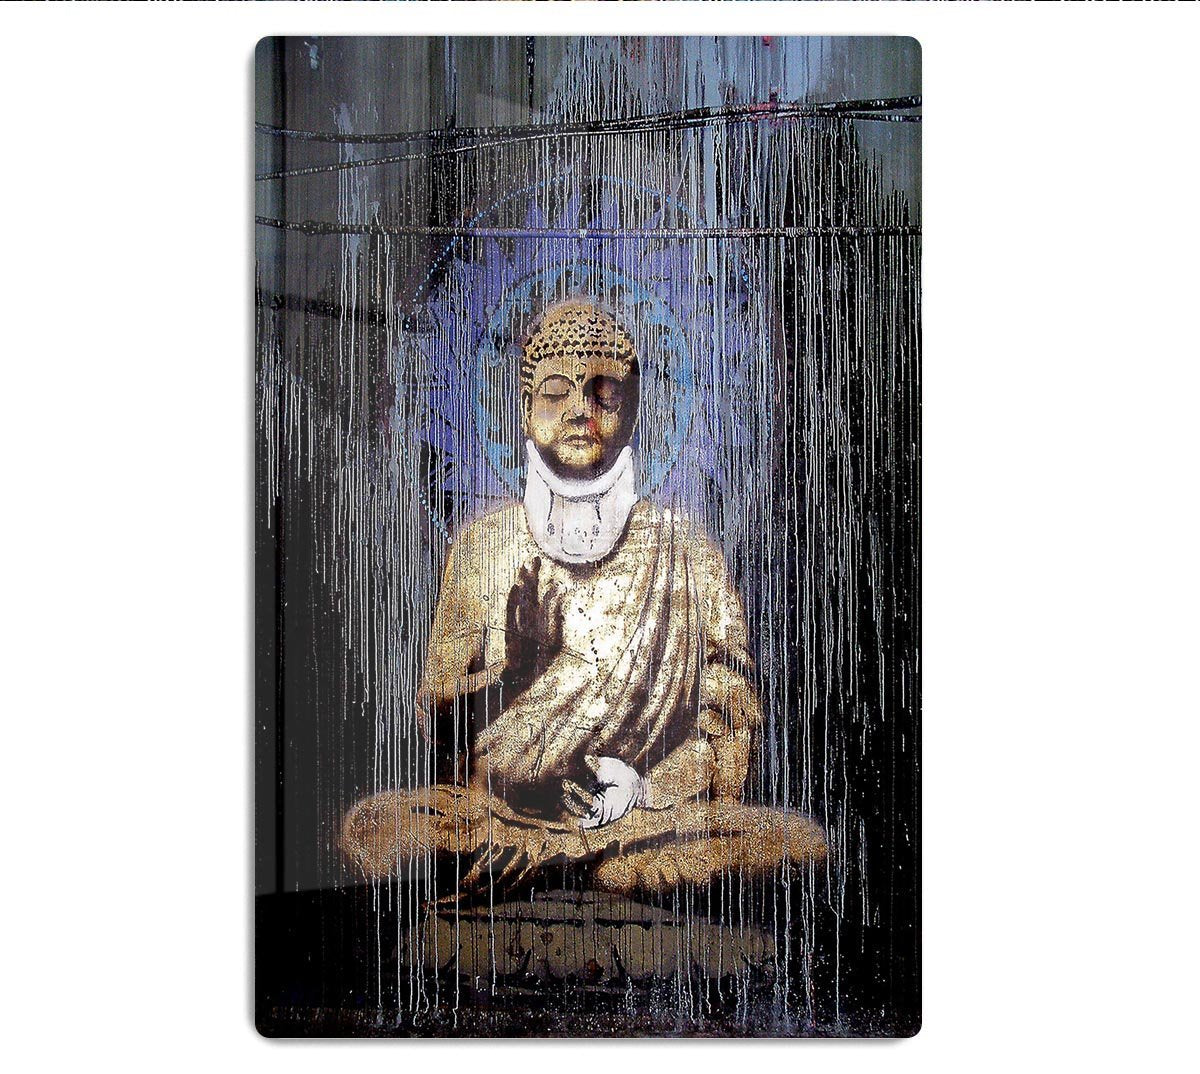 Banksy Injured Buddha HD Metal Print